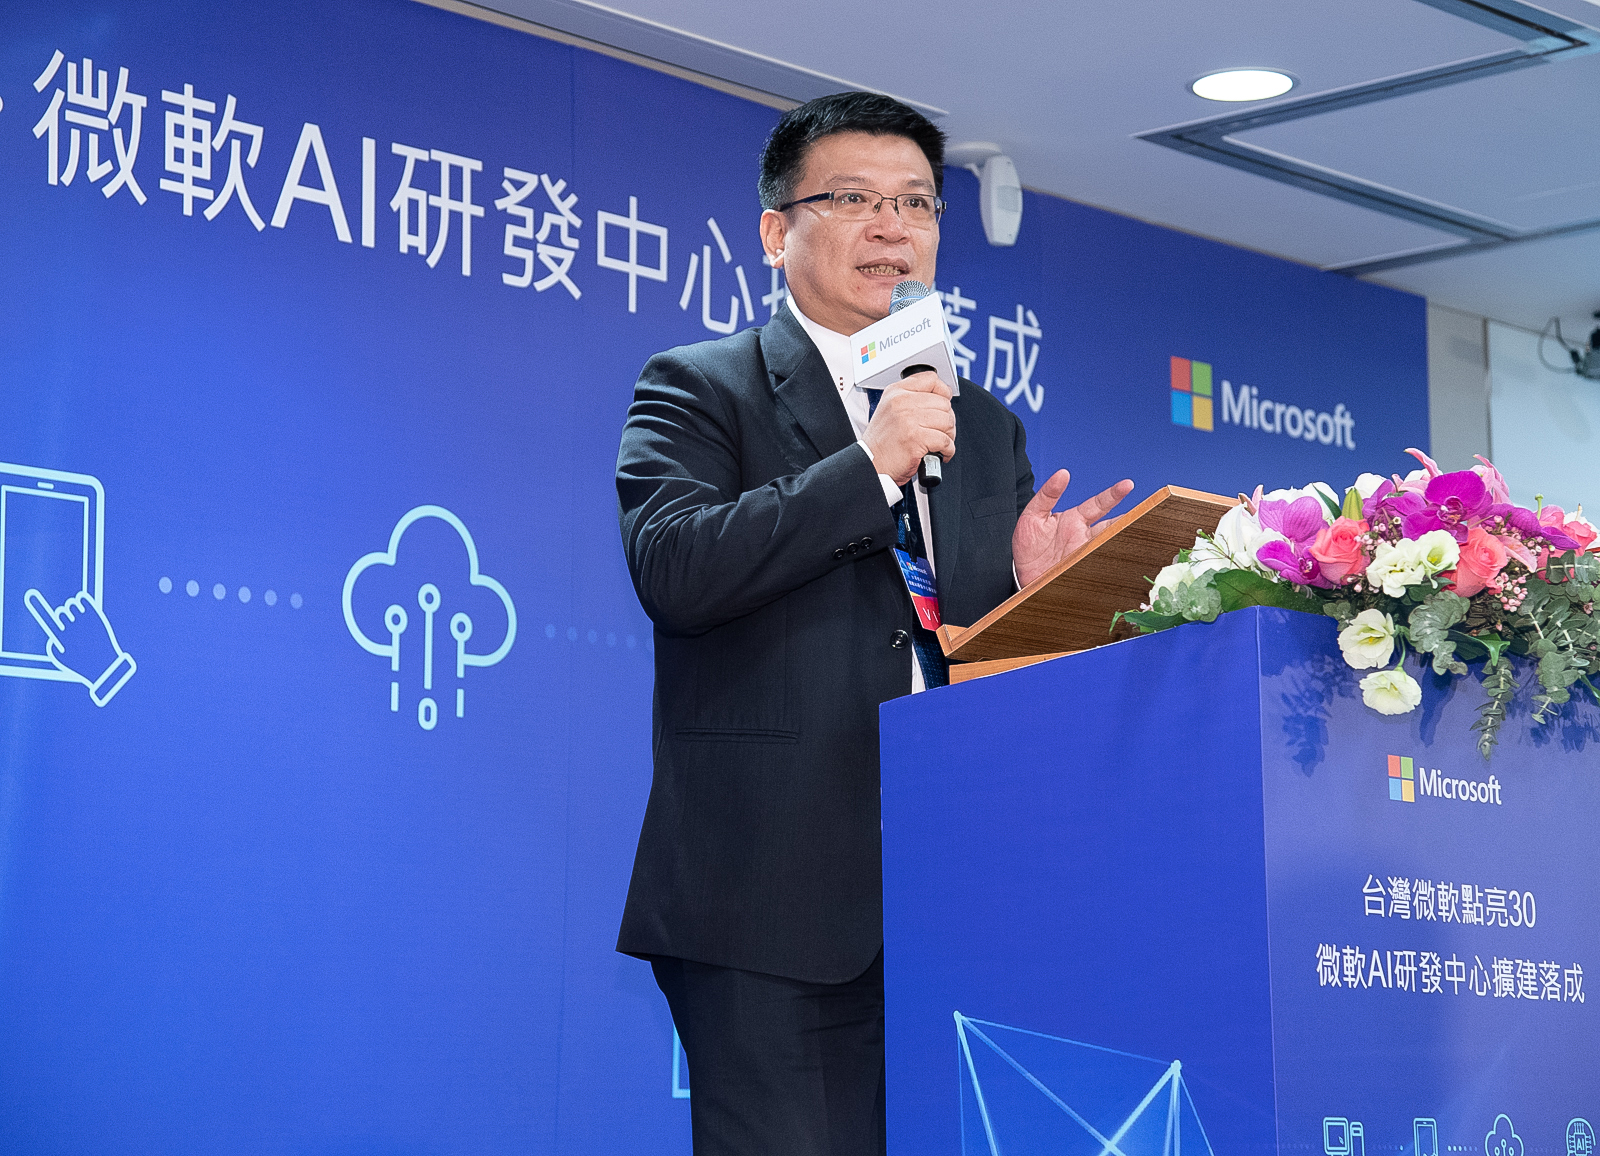 經濟部政務次長曾文生指出，微軟參與台灣產官學的科技合作向來不遺餘力。期待今年微軟AI研發中心擴大編制搬遷至新辦公室後，能帶動台灣AI人才與技術再升級，提升台灣競爭力，實現台灣成為亞太AI人才資源庫的願景